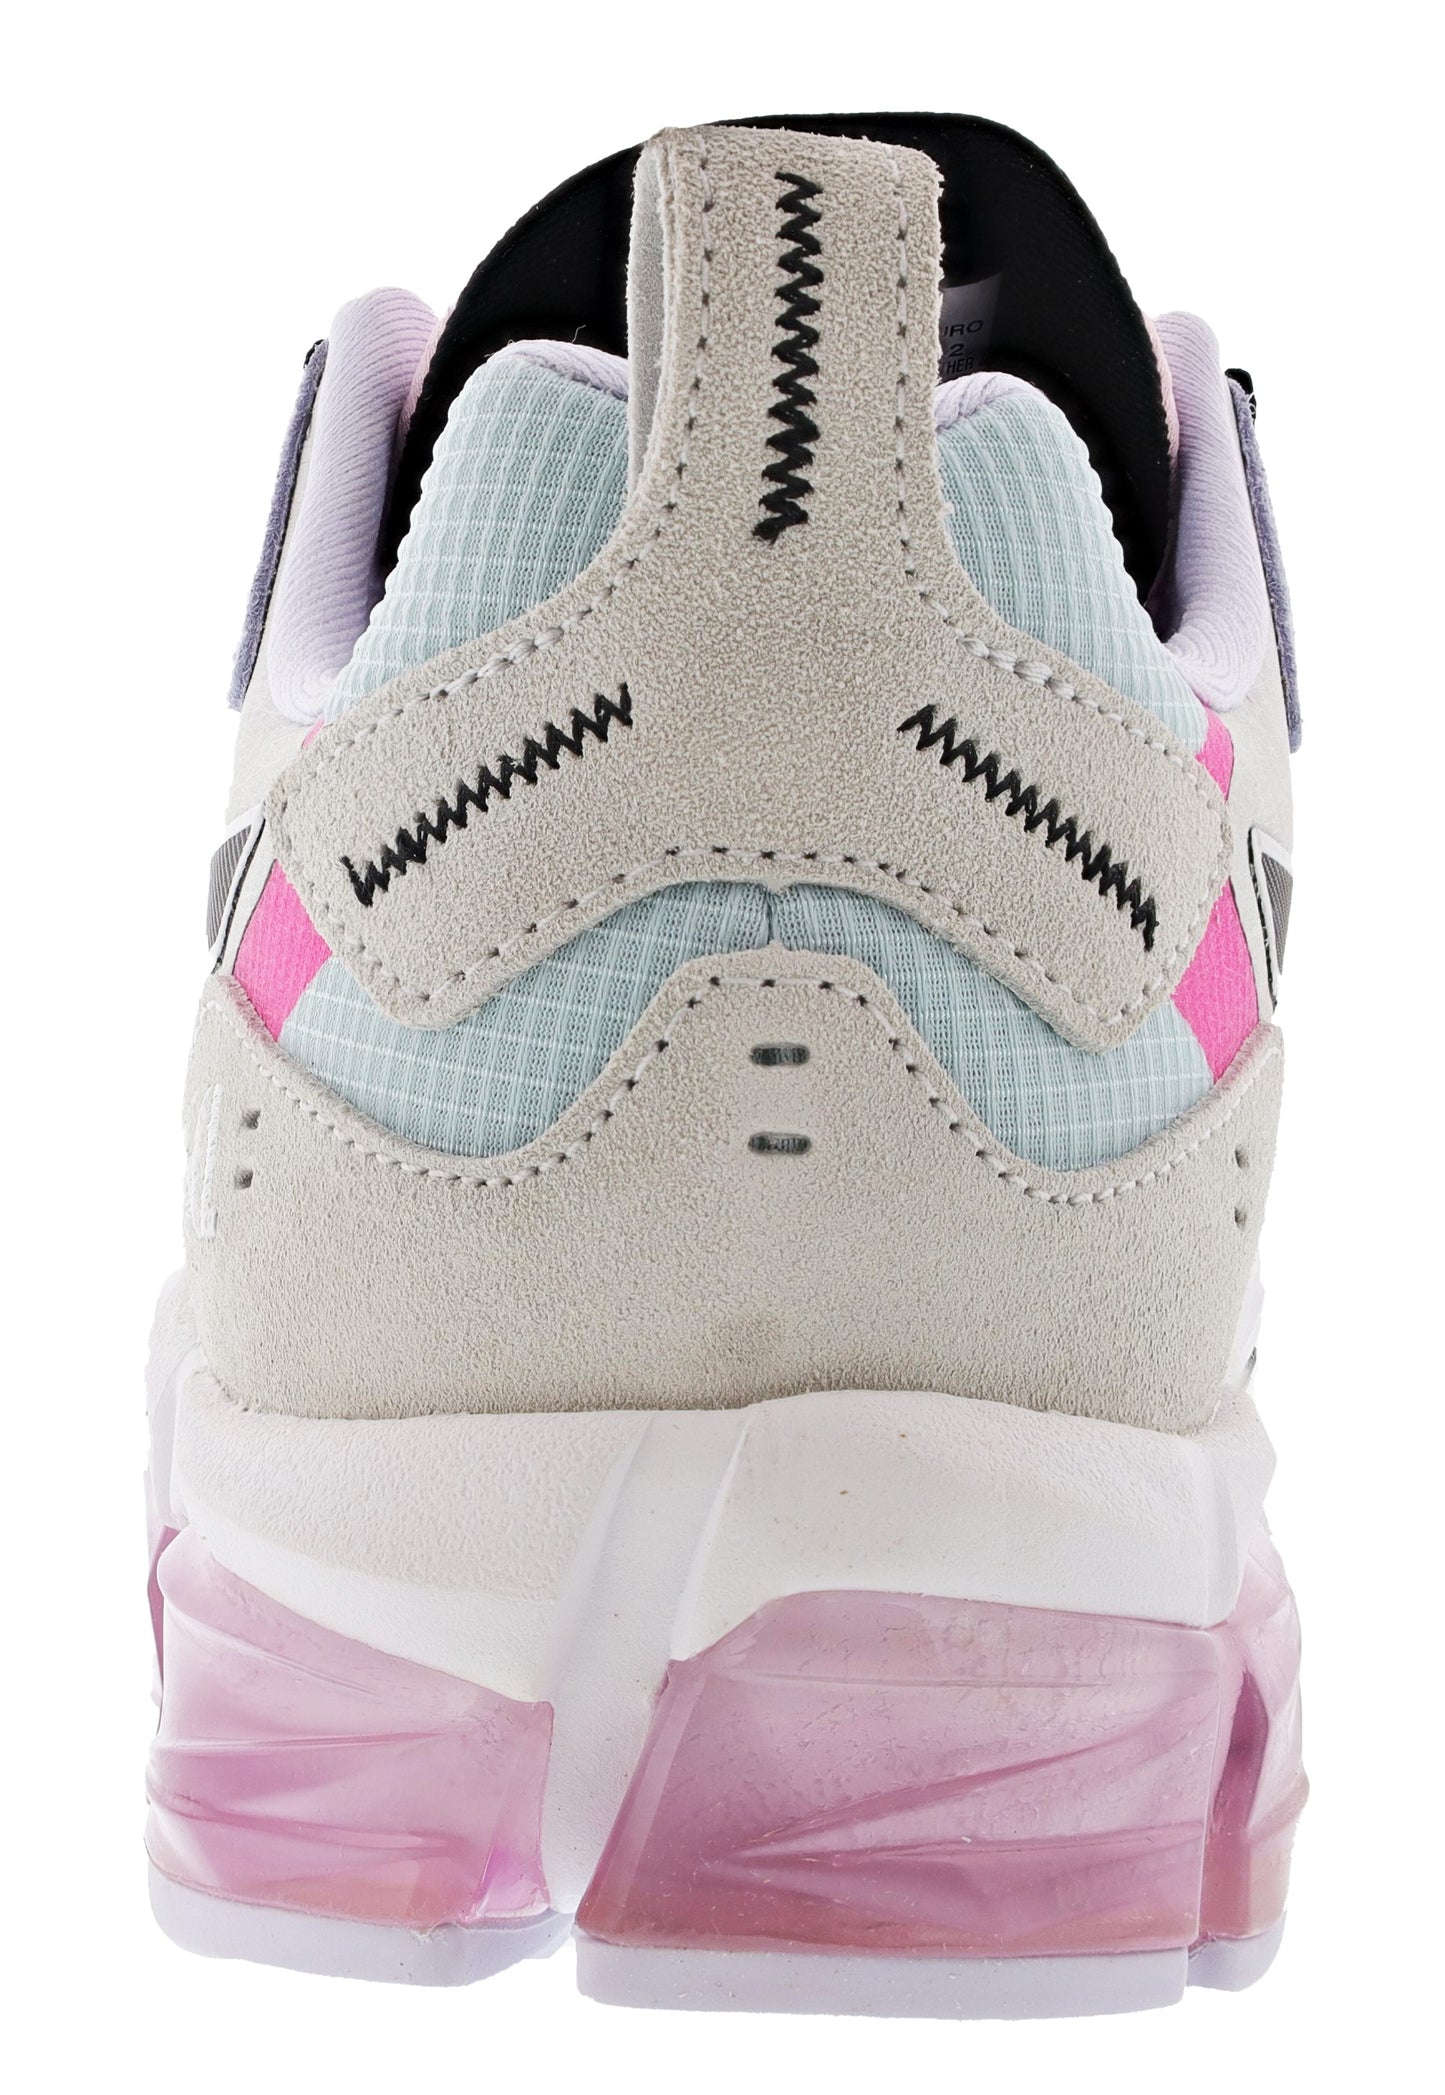 
                  
                    Back of Aqua Angel/Hot Pink Asics Gel Quantum 180 Women's Running Shoes for Overpronation
                  
                